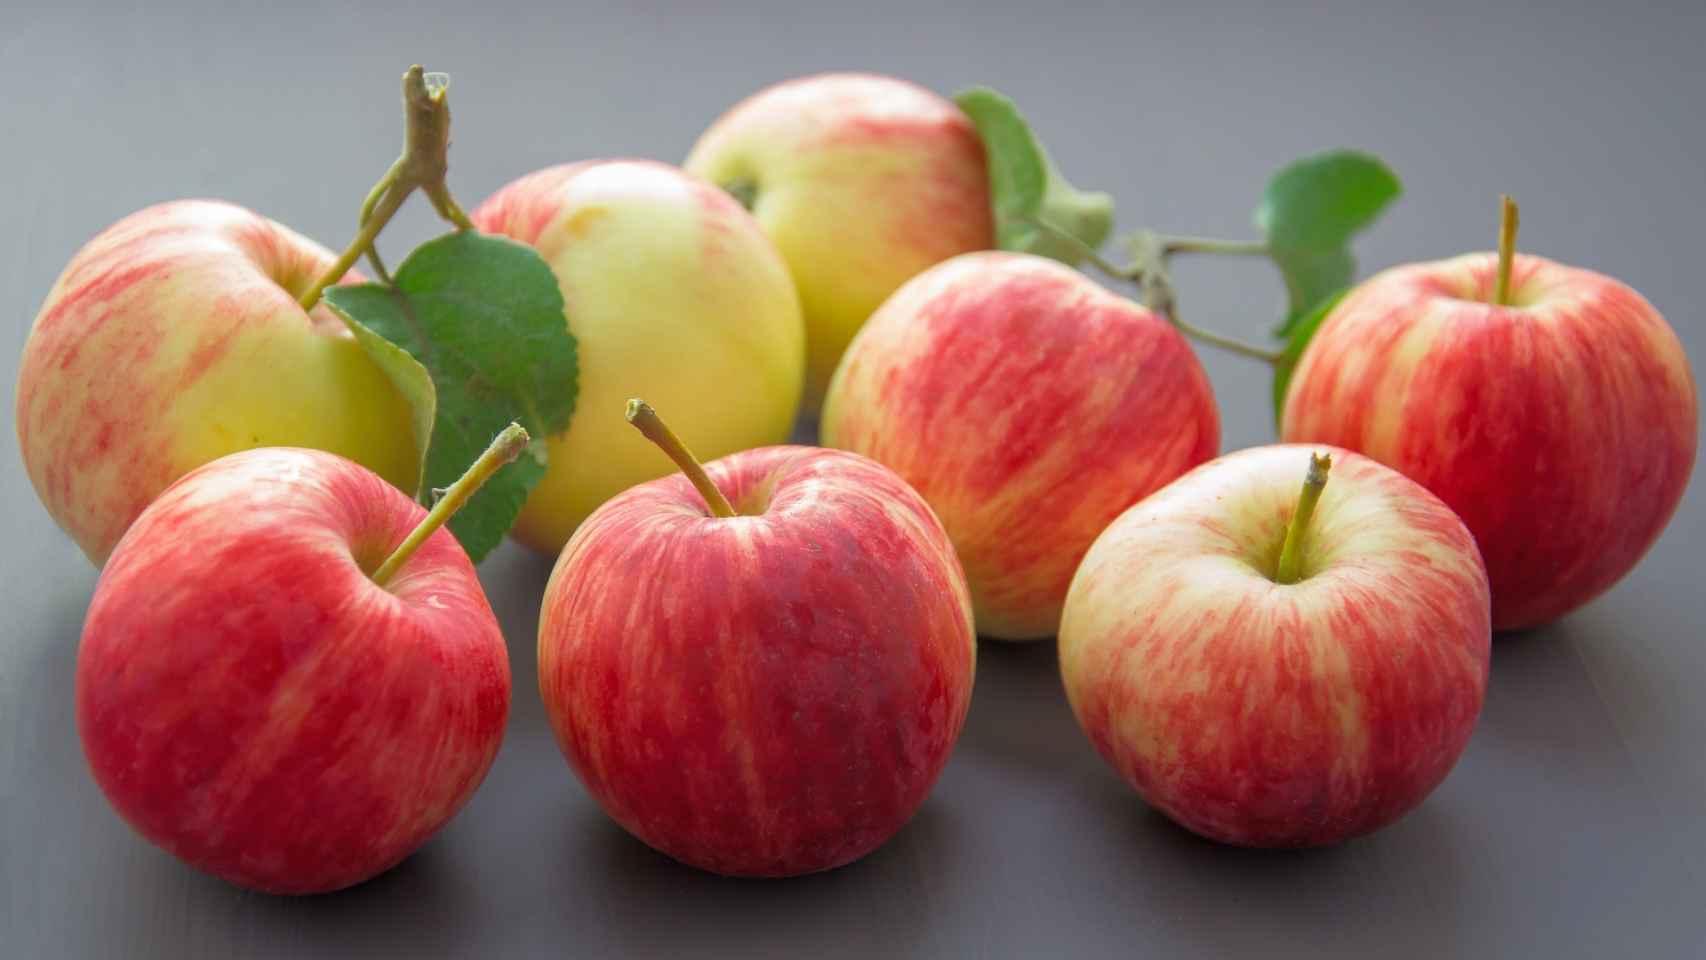 La manzana es un alimento muy recomendable para nuestra salud, también para el cuidado de nuestros riñones.